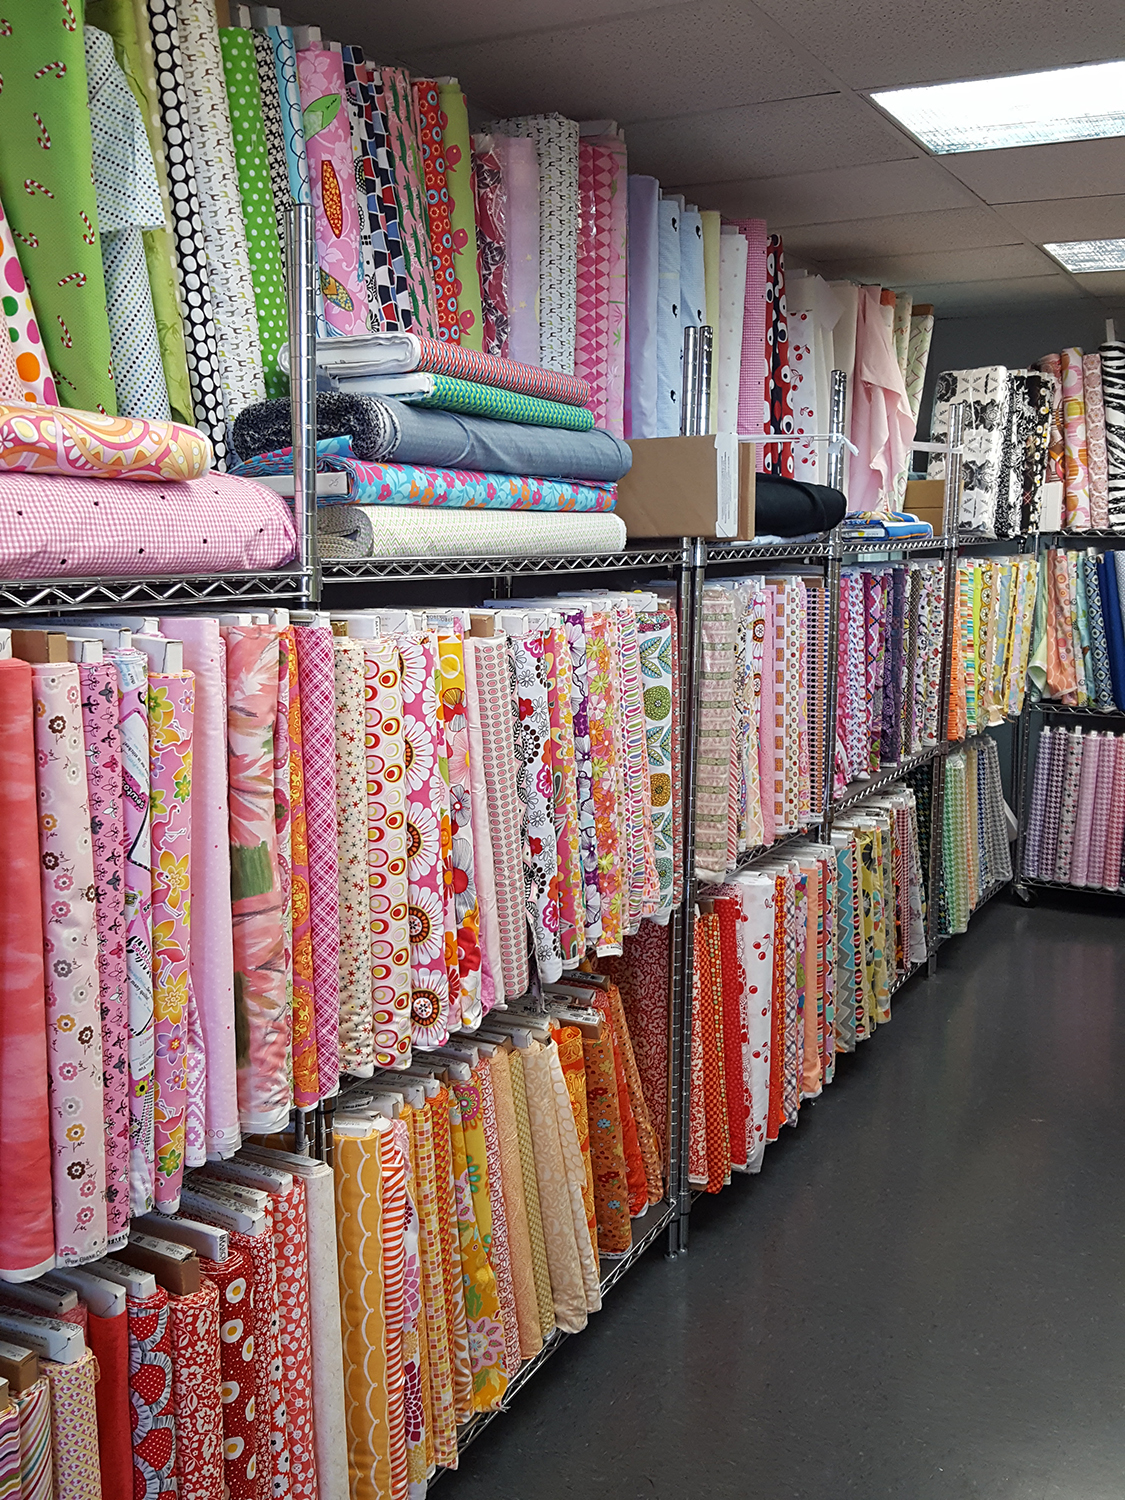 Discount Fabric Shop & Fashion Fabrics for Sale in San Antonio, Dallas & Houston Texas | Fabrictopia